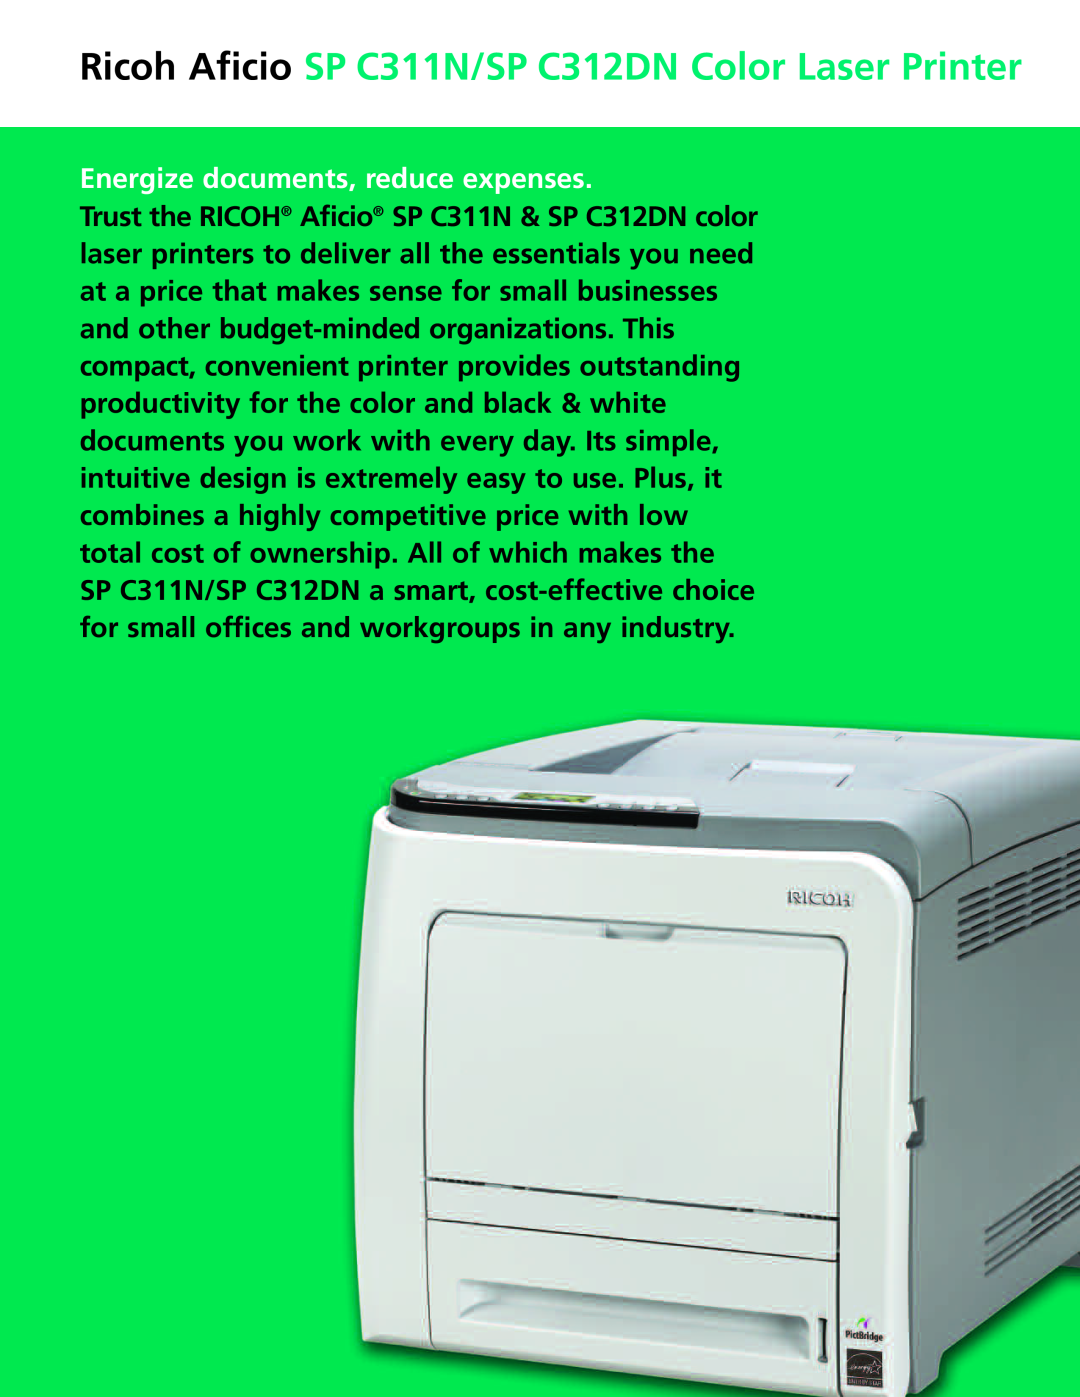 Ricoh manual Ricoh Aficio SP C311N/SP C312DN Color Laser Printer, Energize documents, reduce expenses 